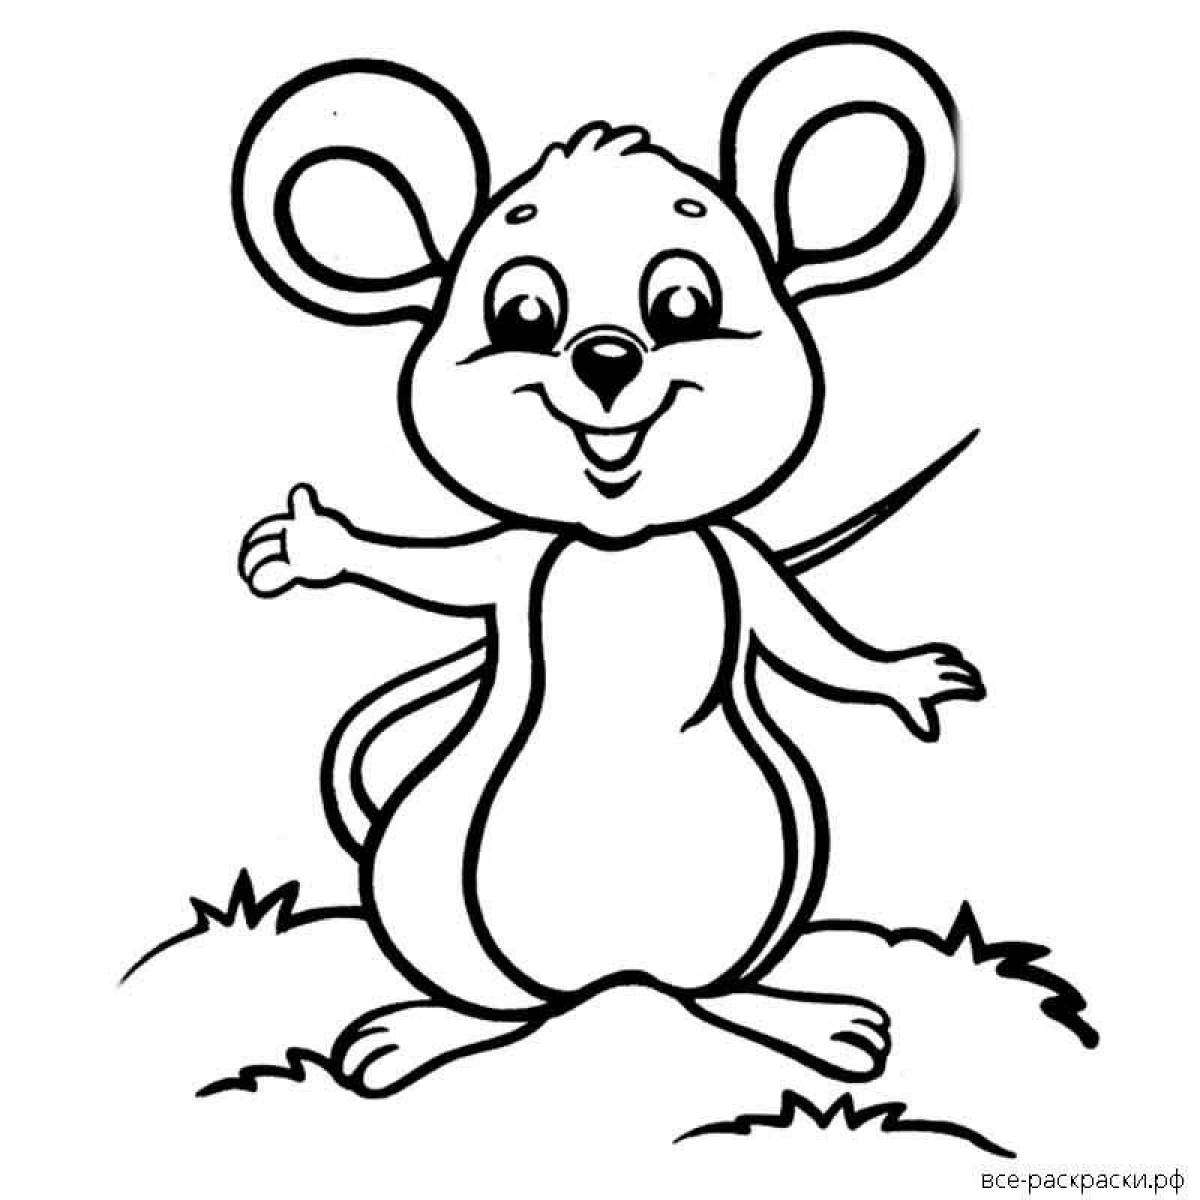 Удивительная страница раскраски мыши для детей